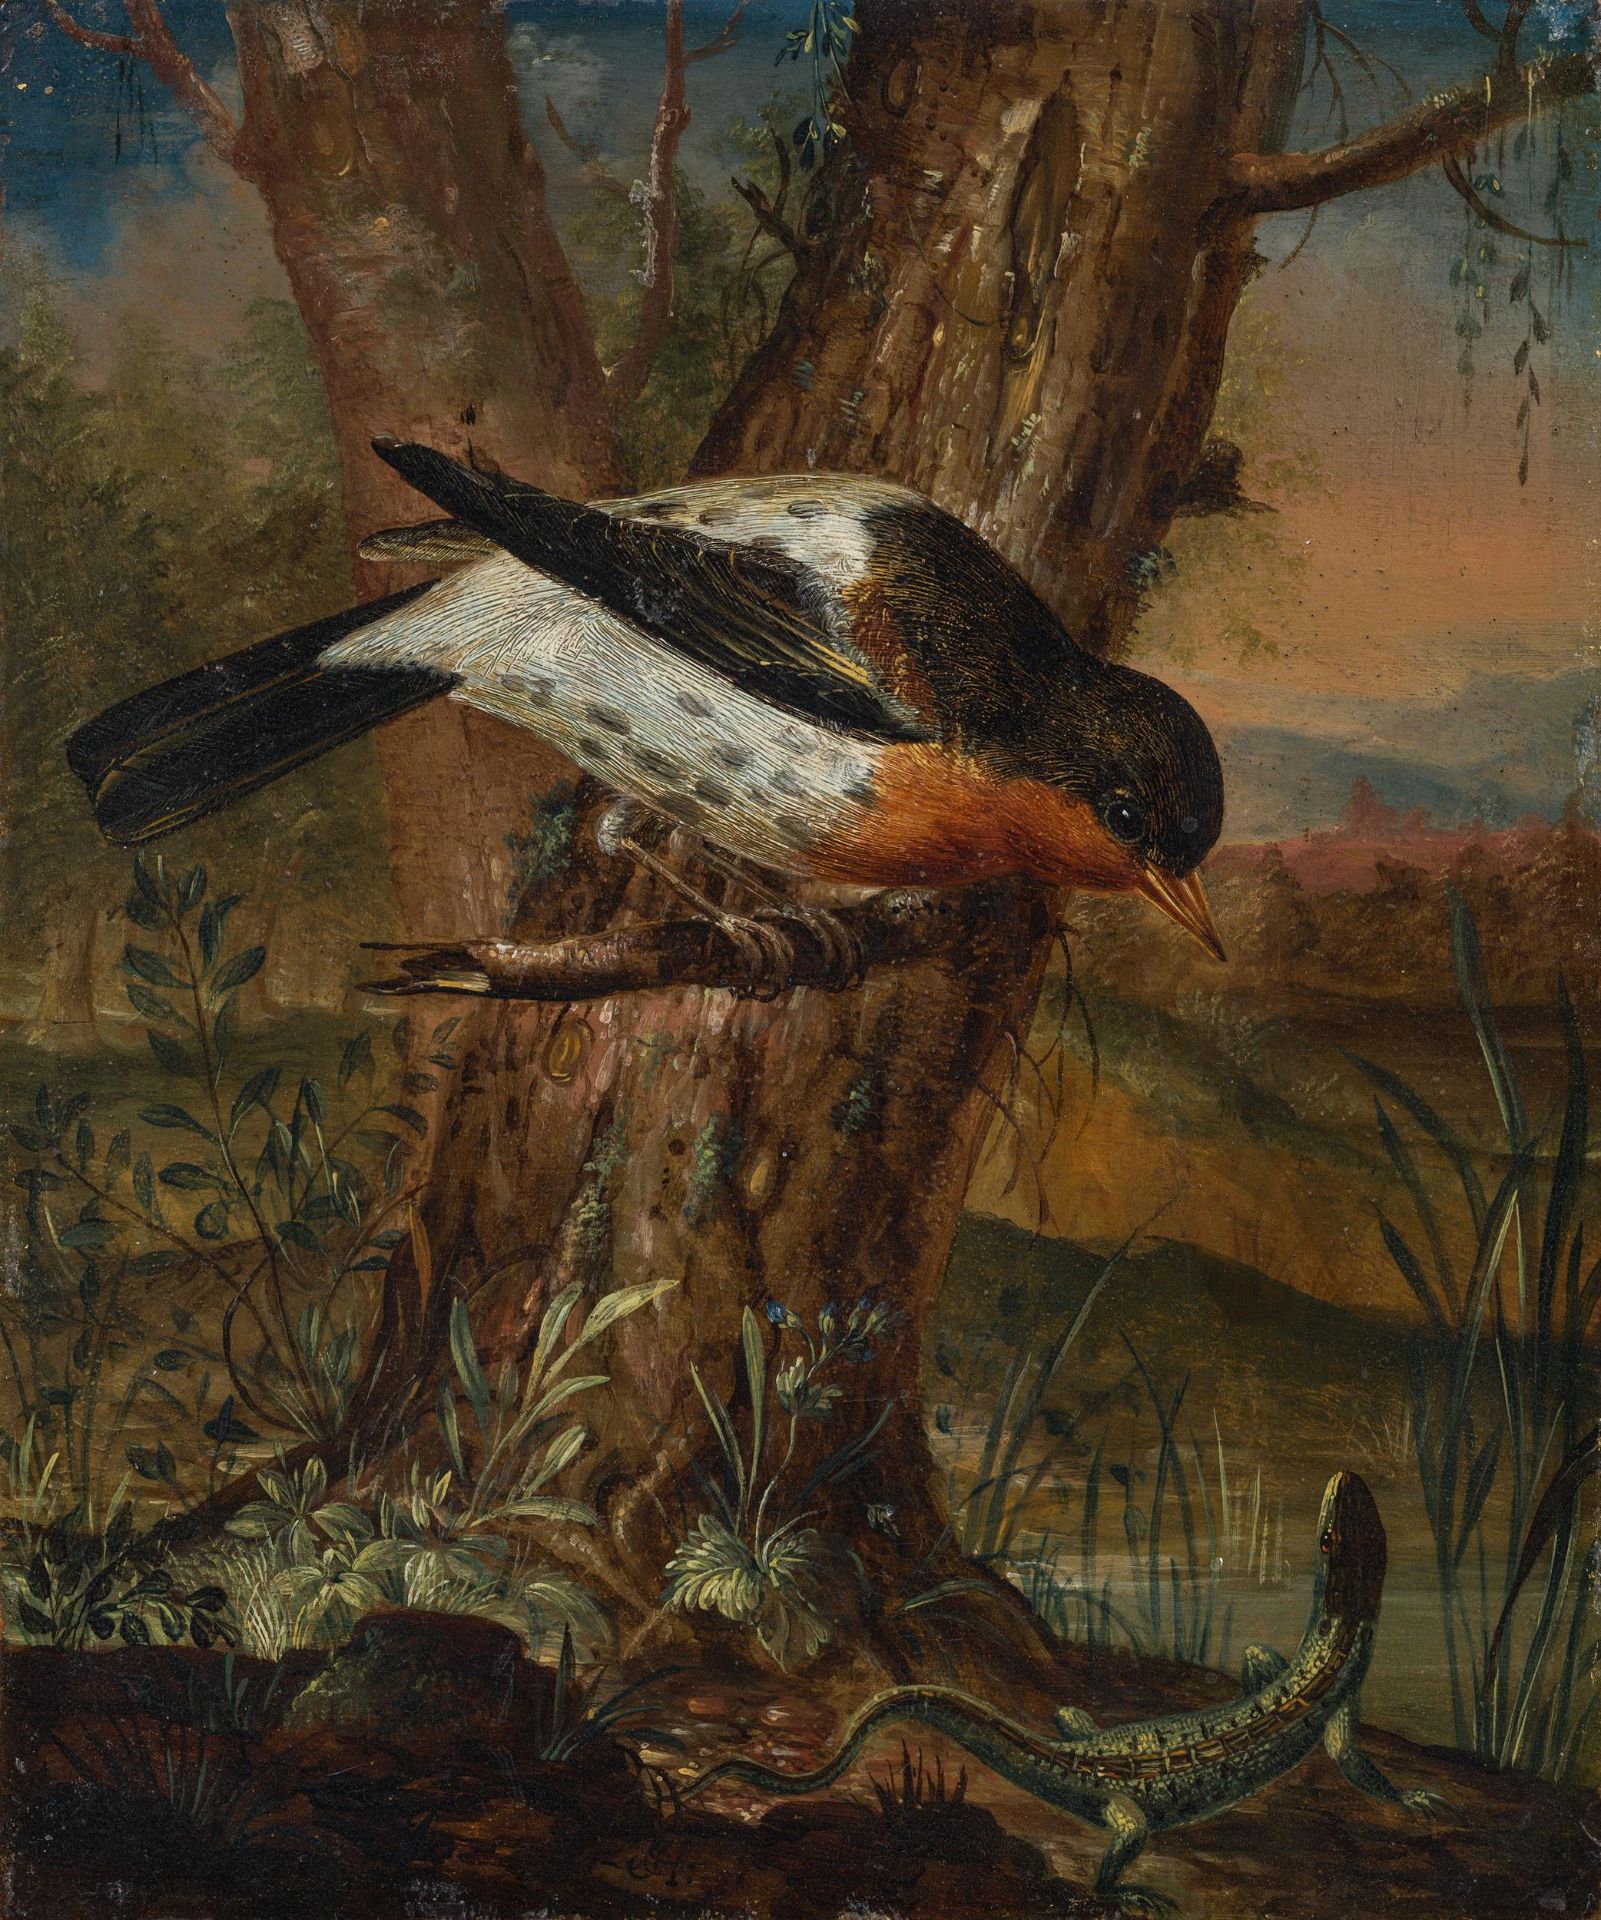 Johann Caspar Hirschely: Landscape with bird and lizard